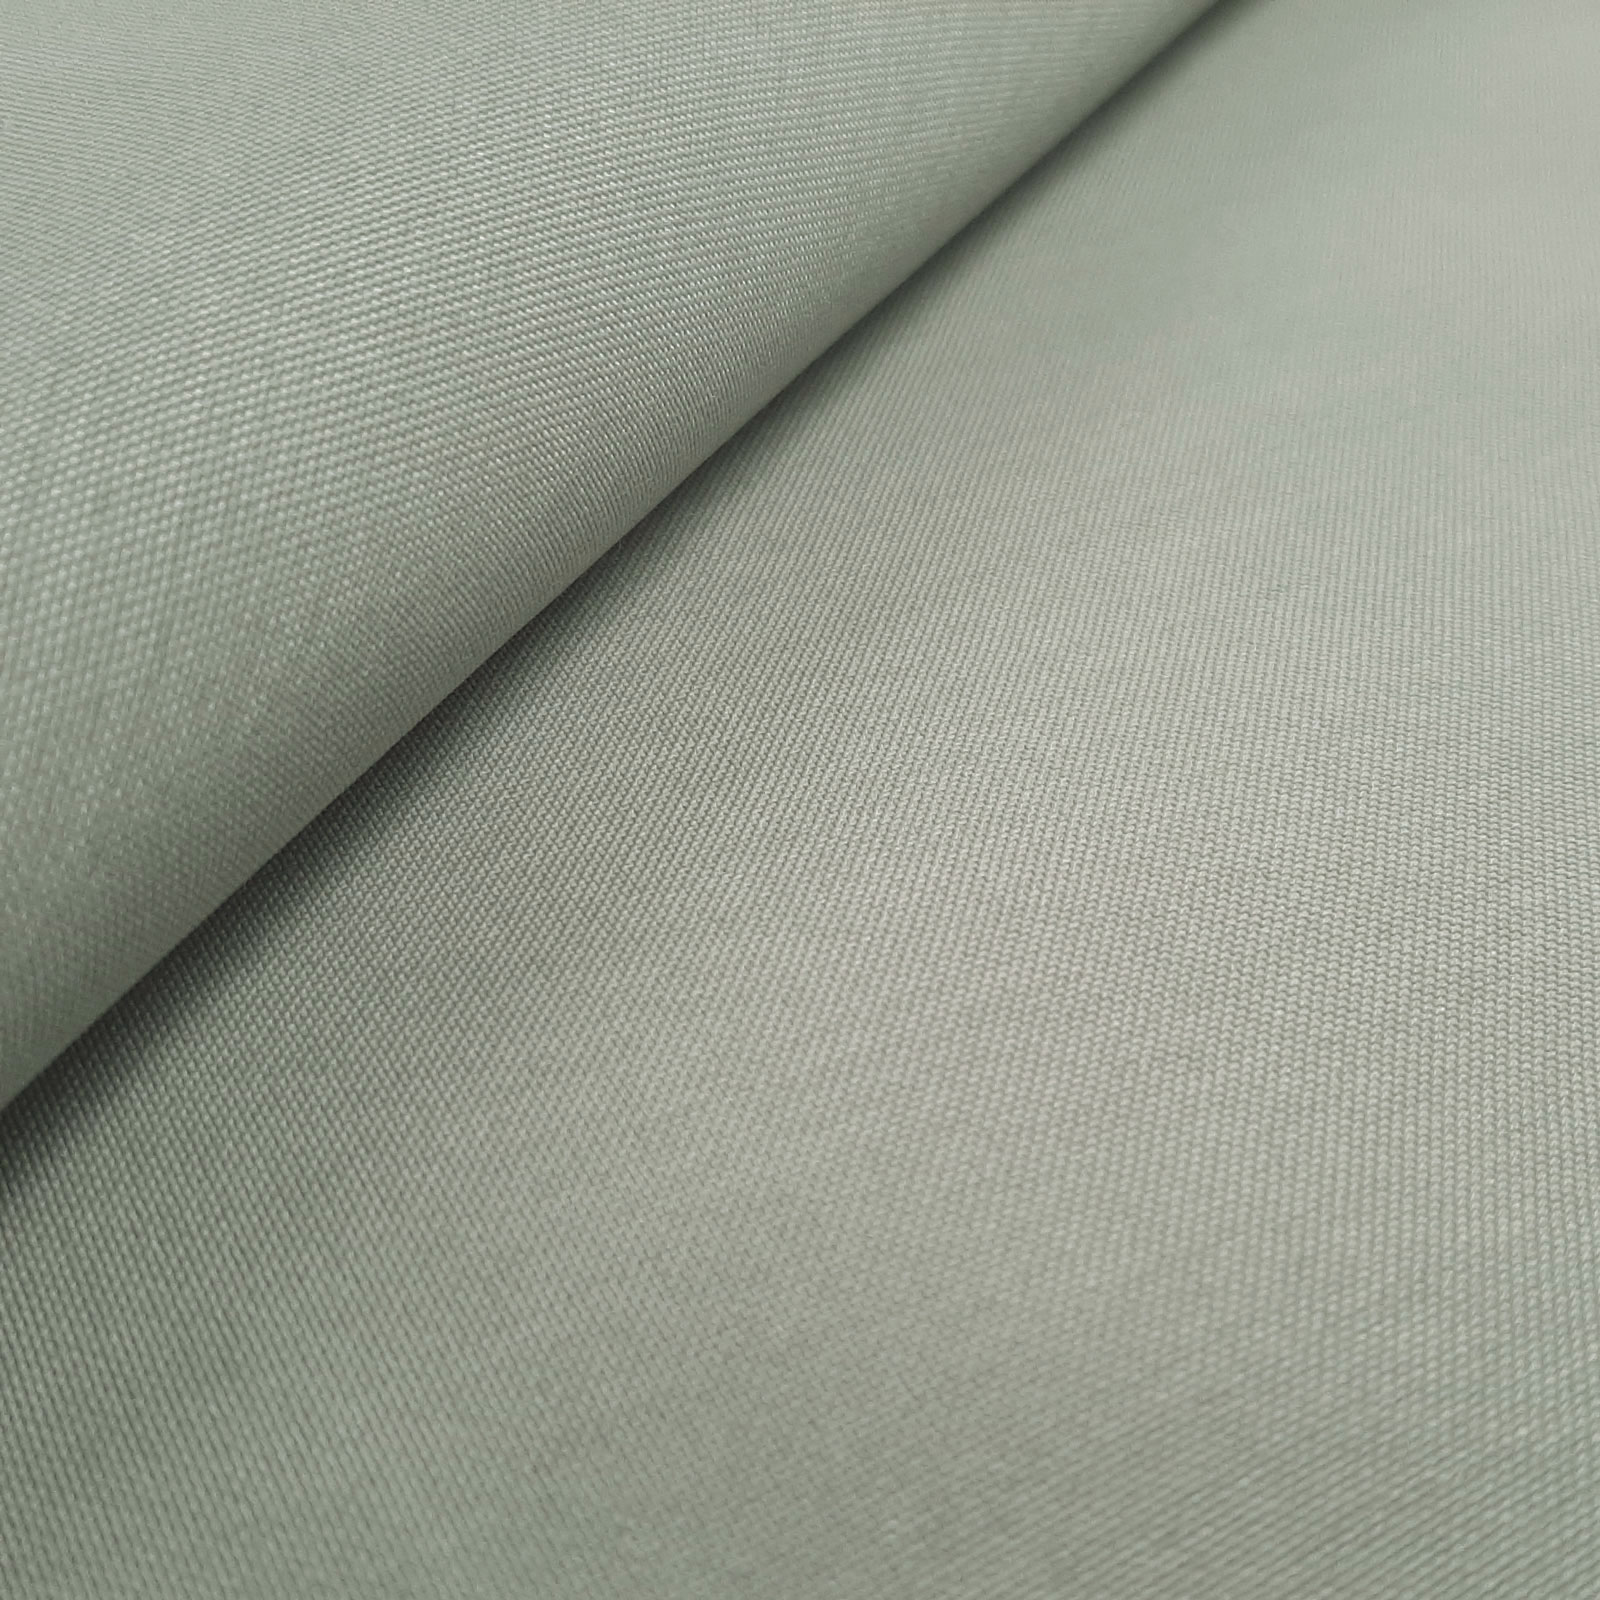 Zinos - robust Cordura® fabric - Light grey